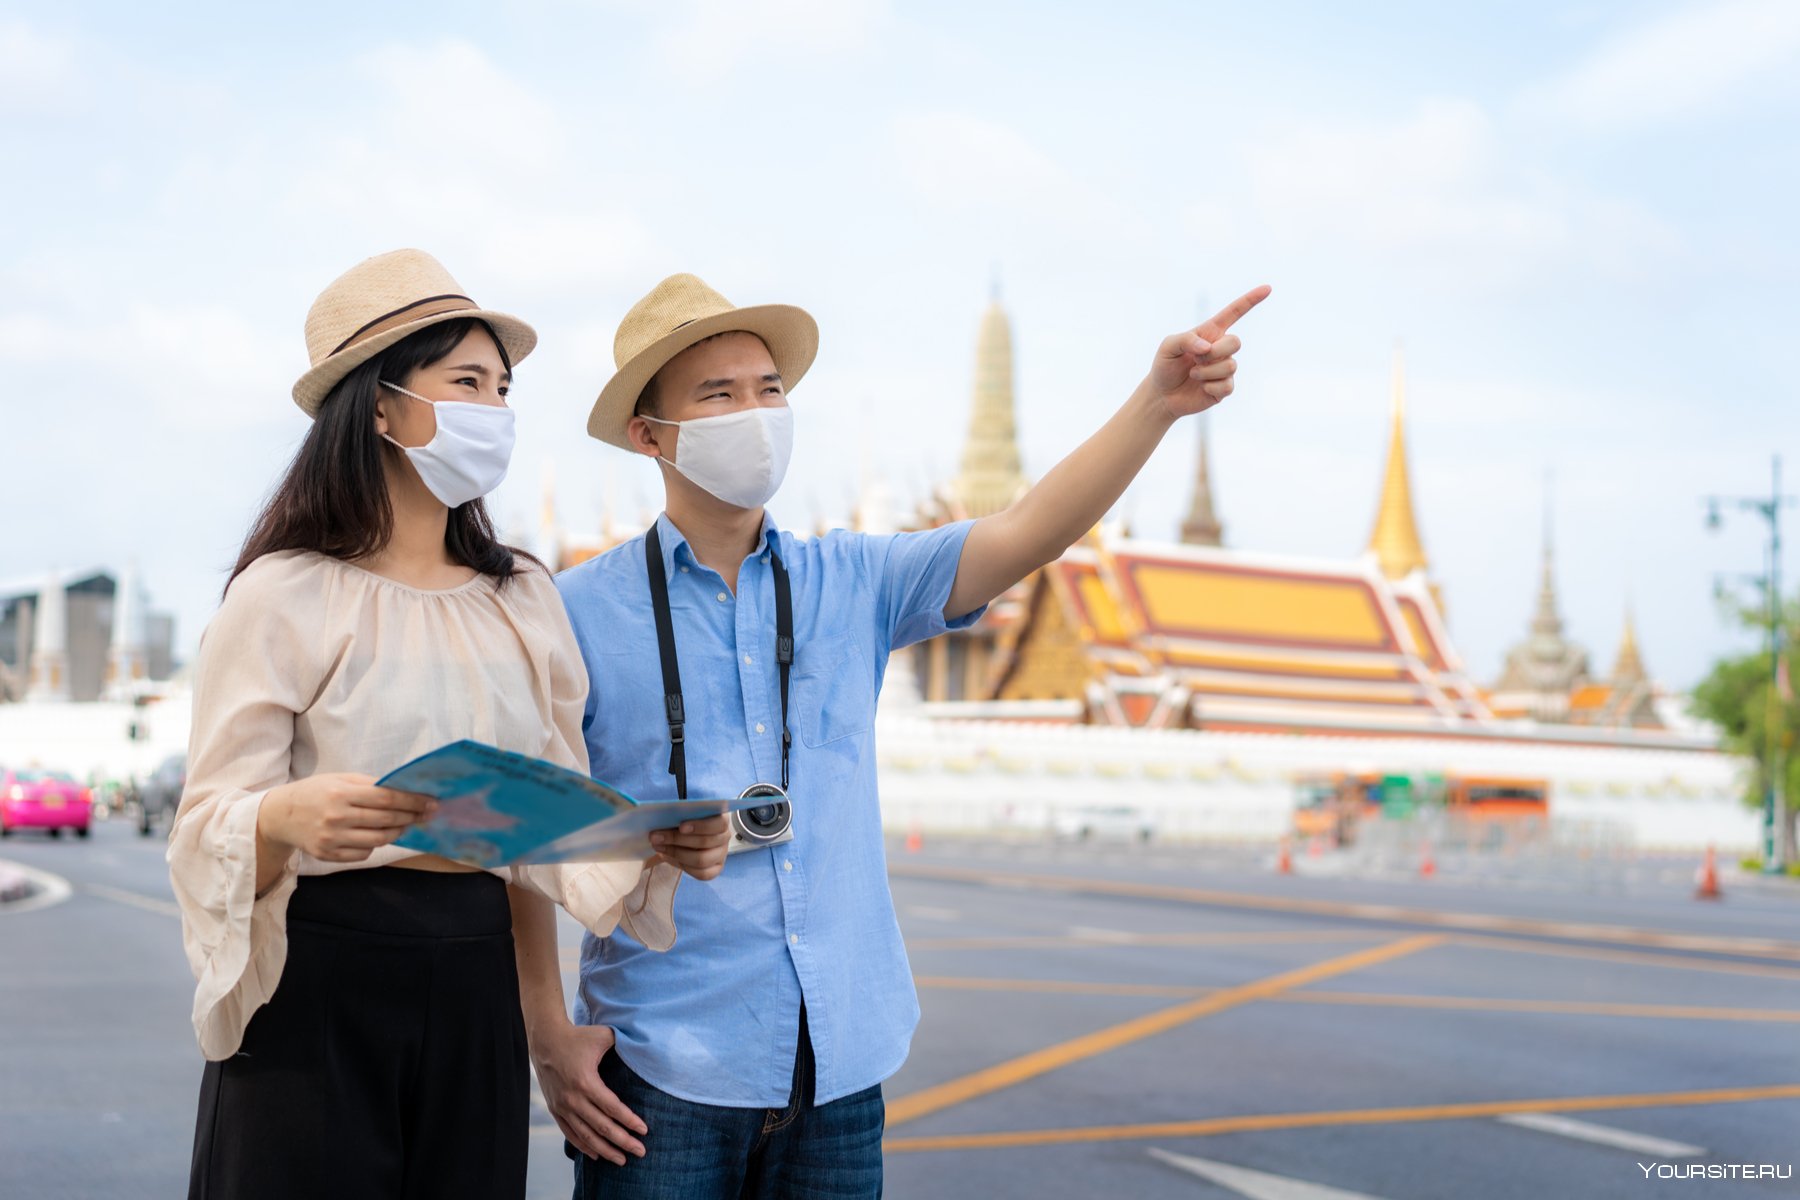 Сколько еще может расти индустрия туризма в таиланде?